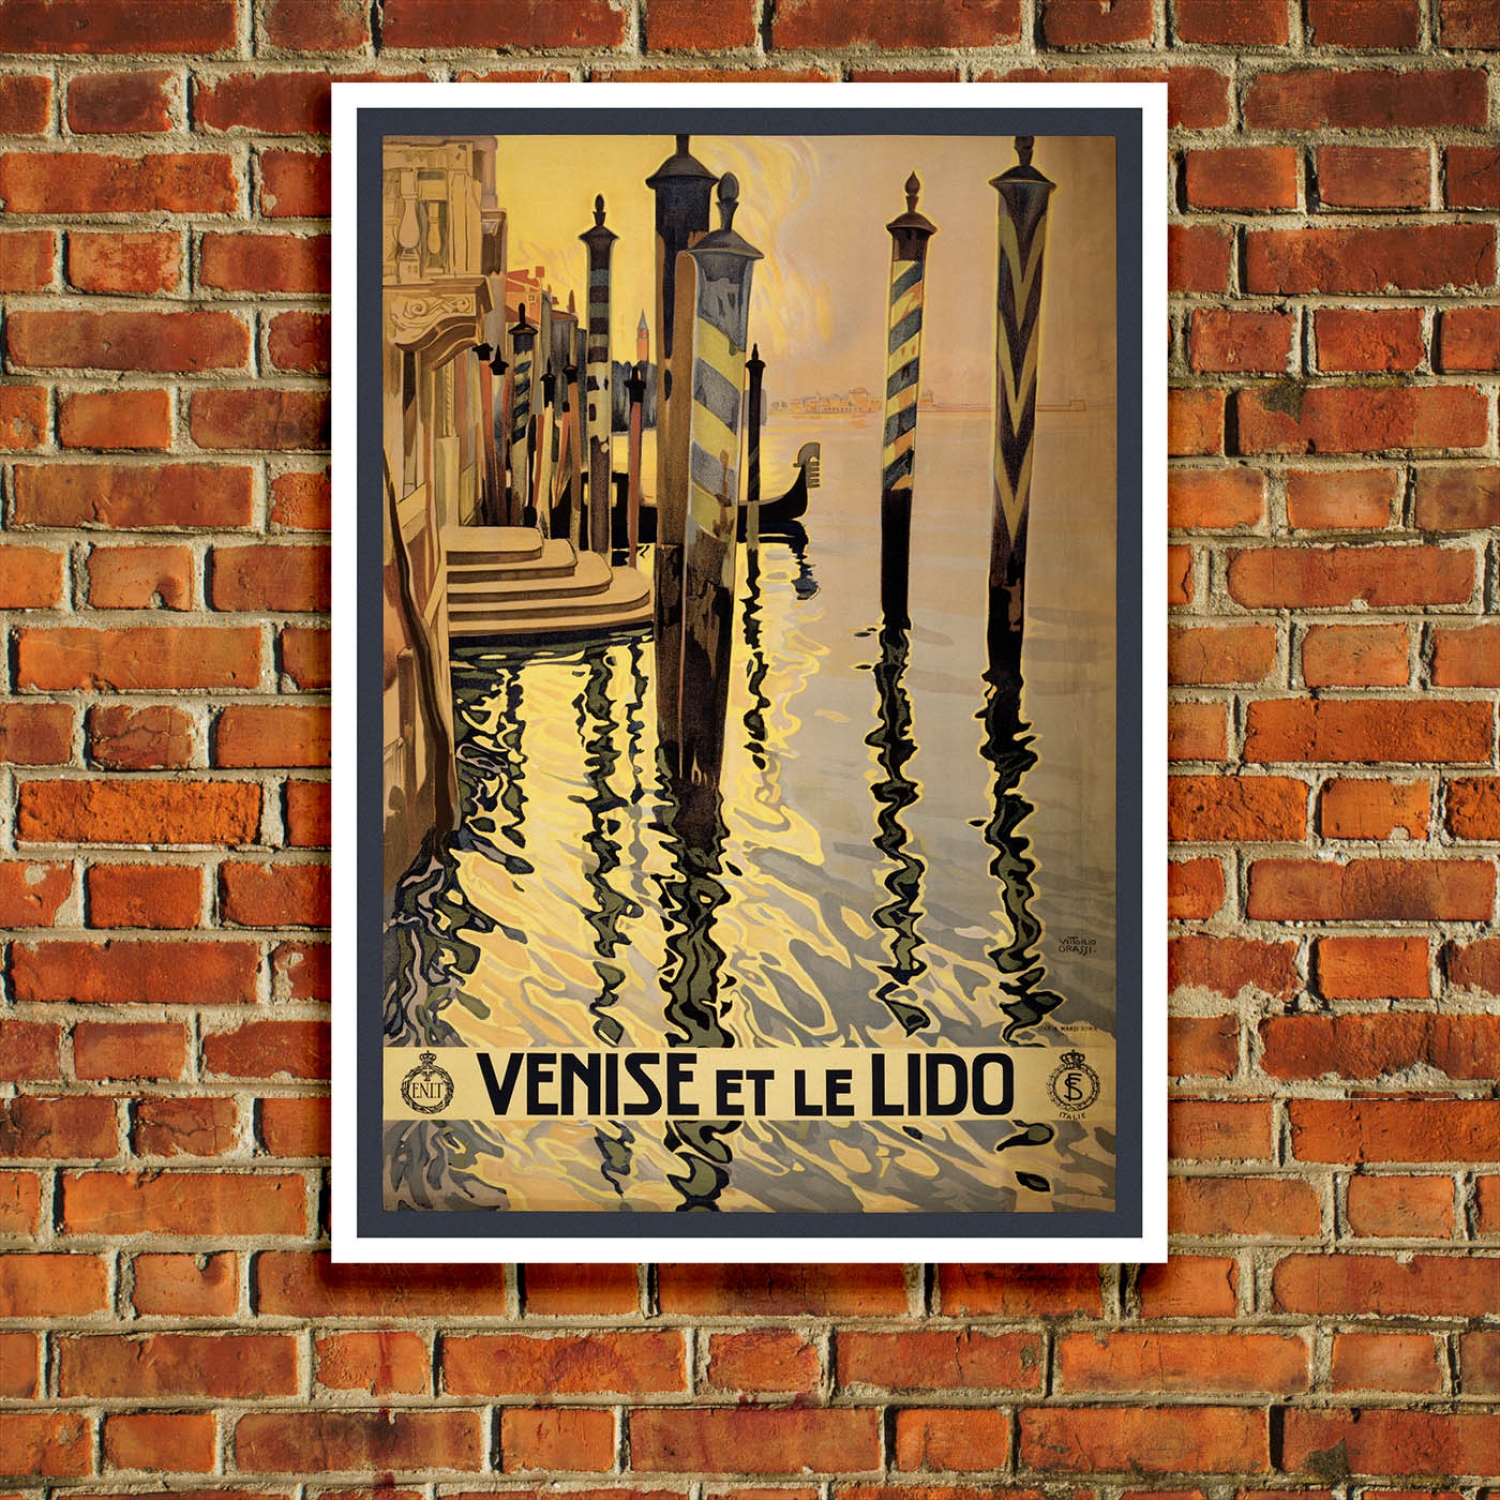 T14 Vintage 1920’s Italy Venice Venise Le Lido Travel Poster A1/A2/A3/A4